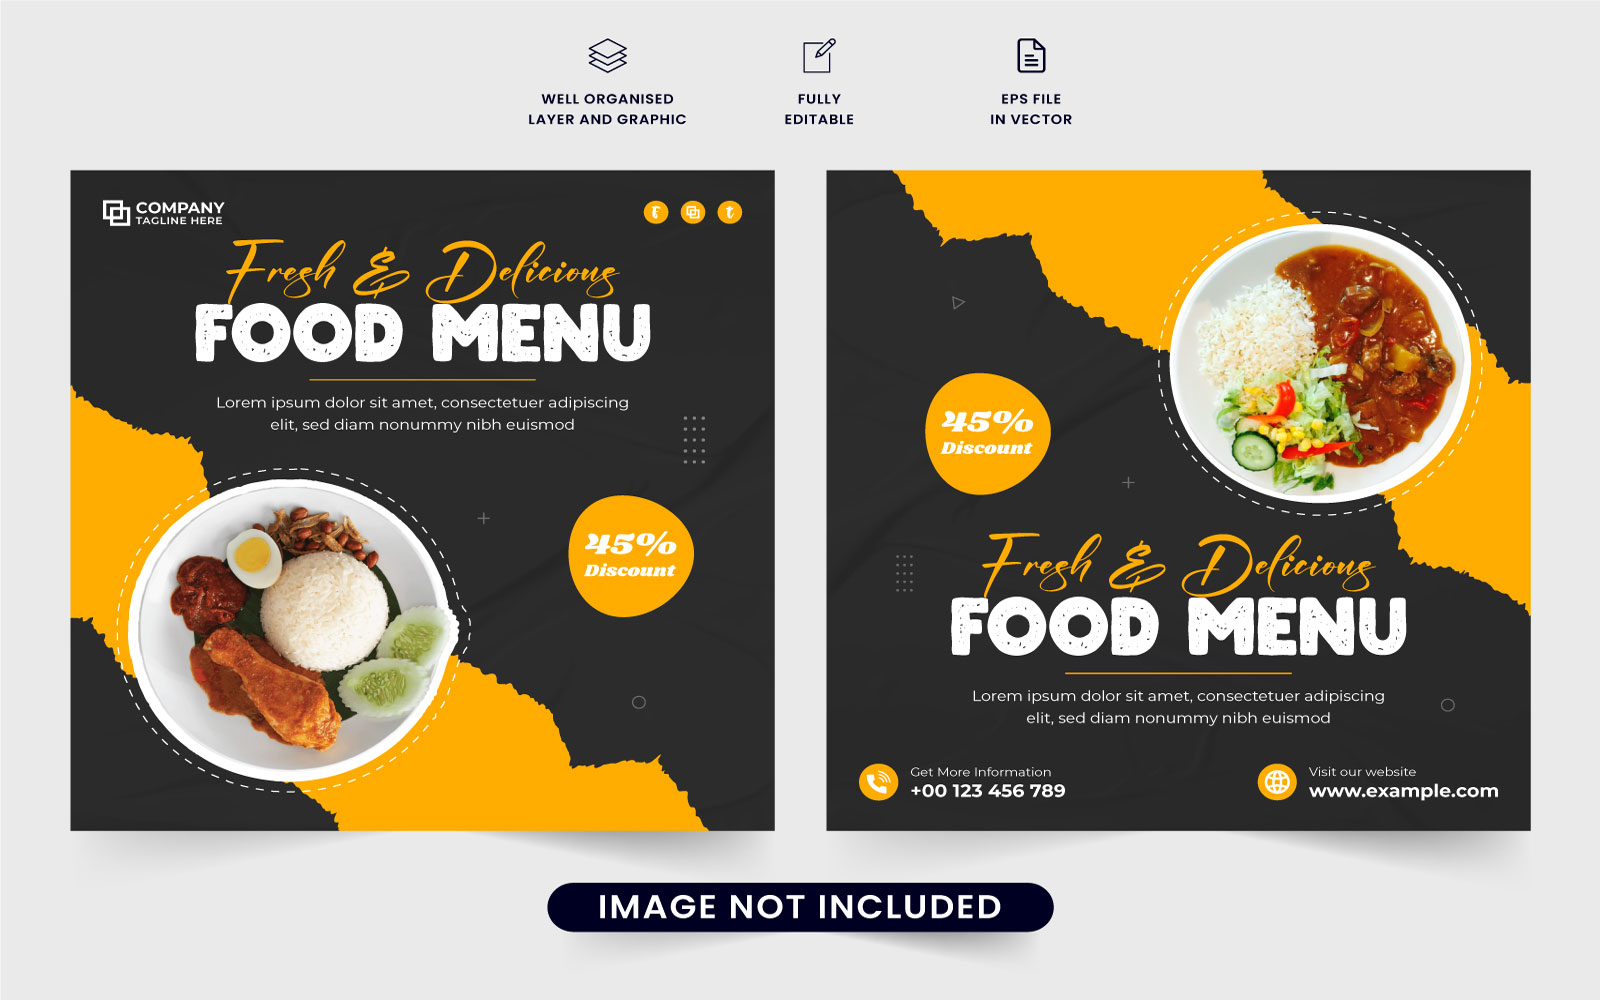 Food menu promotion poster design vector